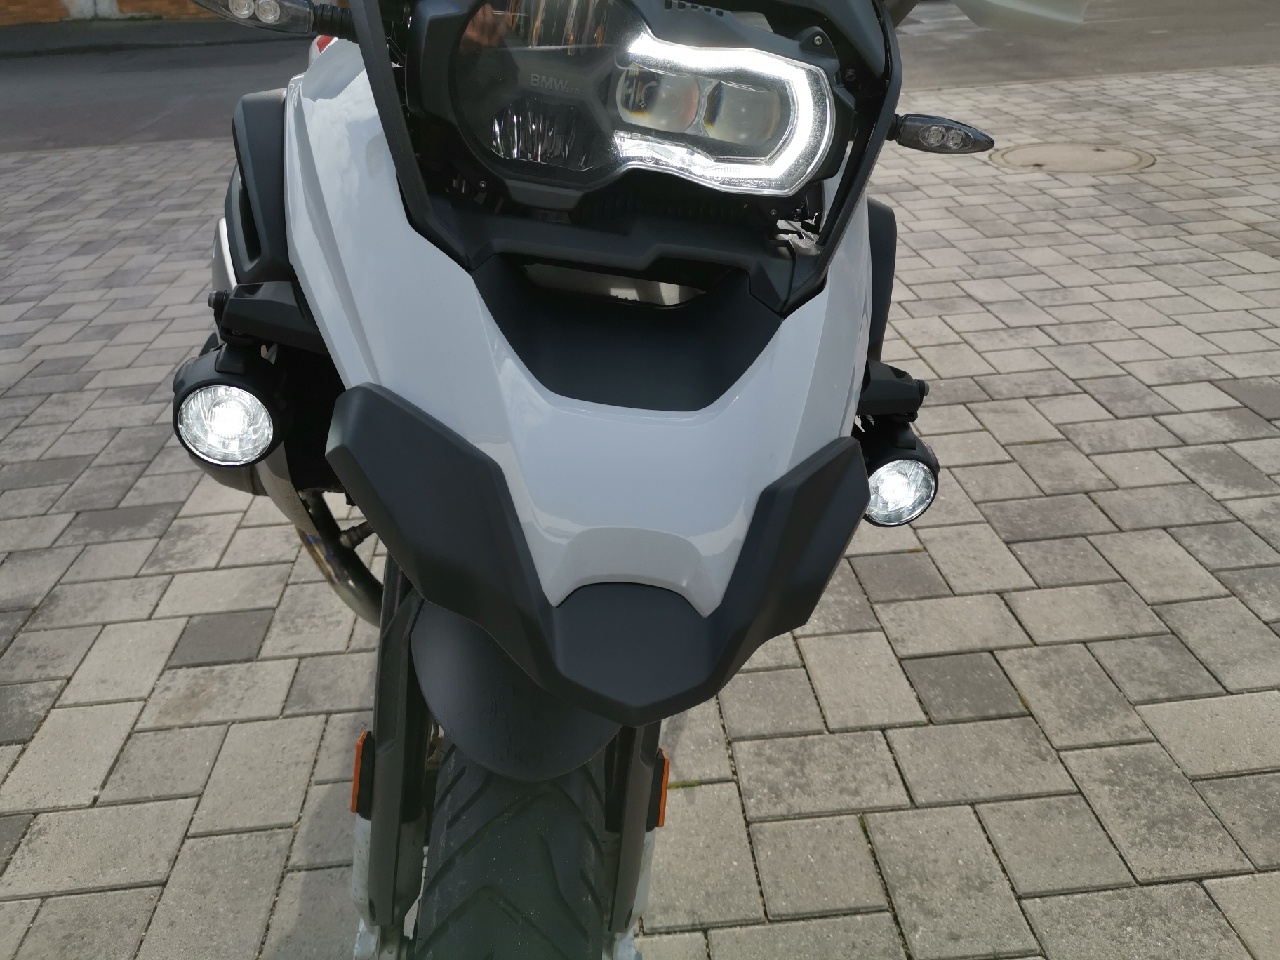 LED Zusatzscheinwerfer Satz Nebel rechts, Fernlicht links für BMW R1200GS  Adventure ab 2014, schwarz (nicht mit LED Hauptscheinwerfer)